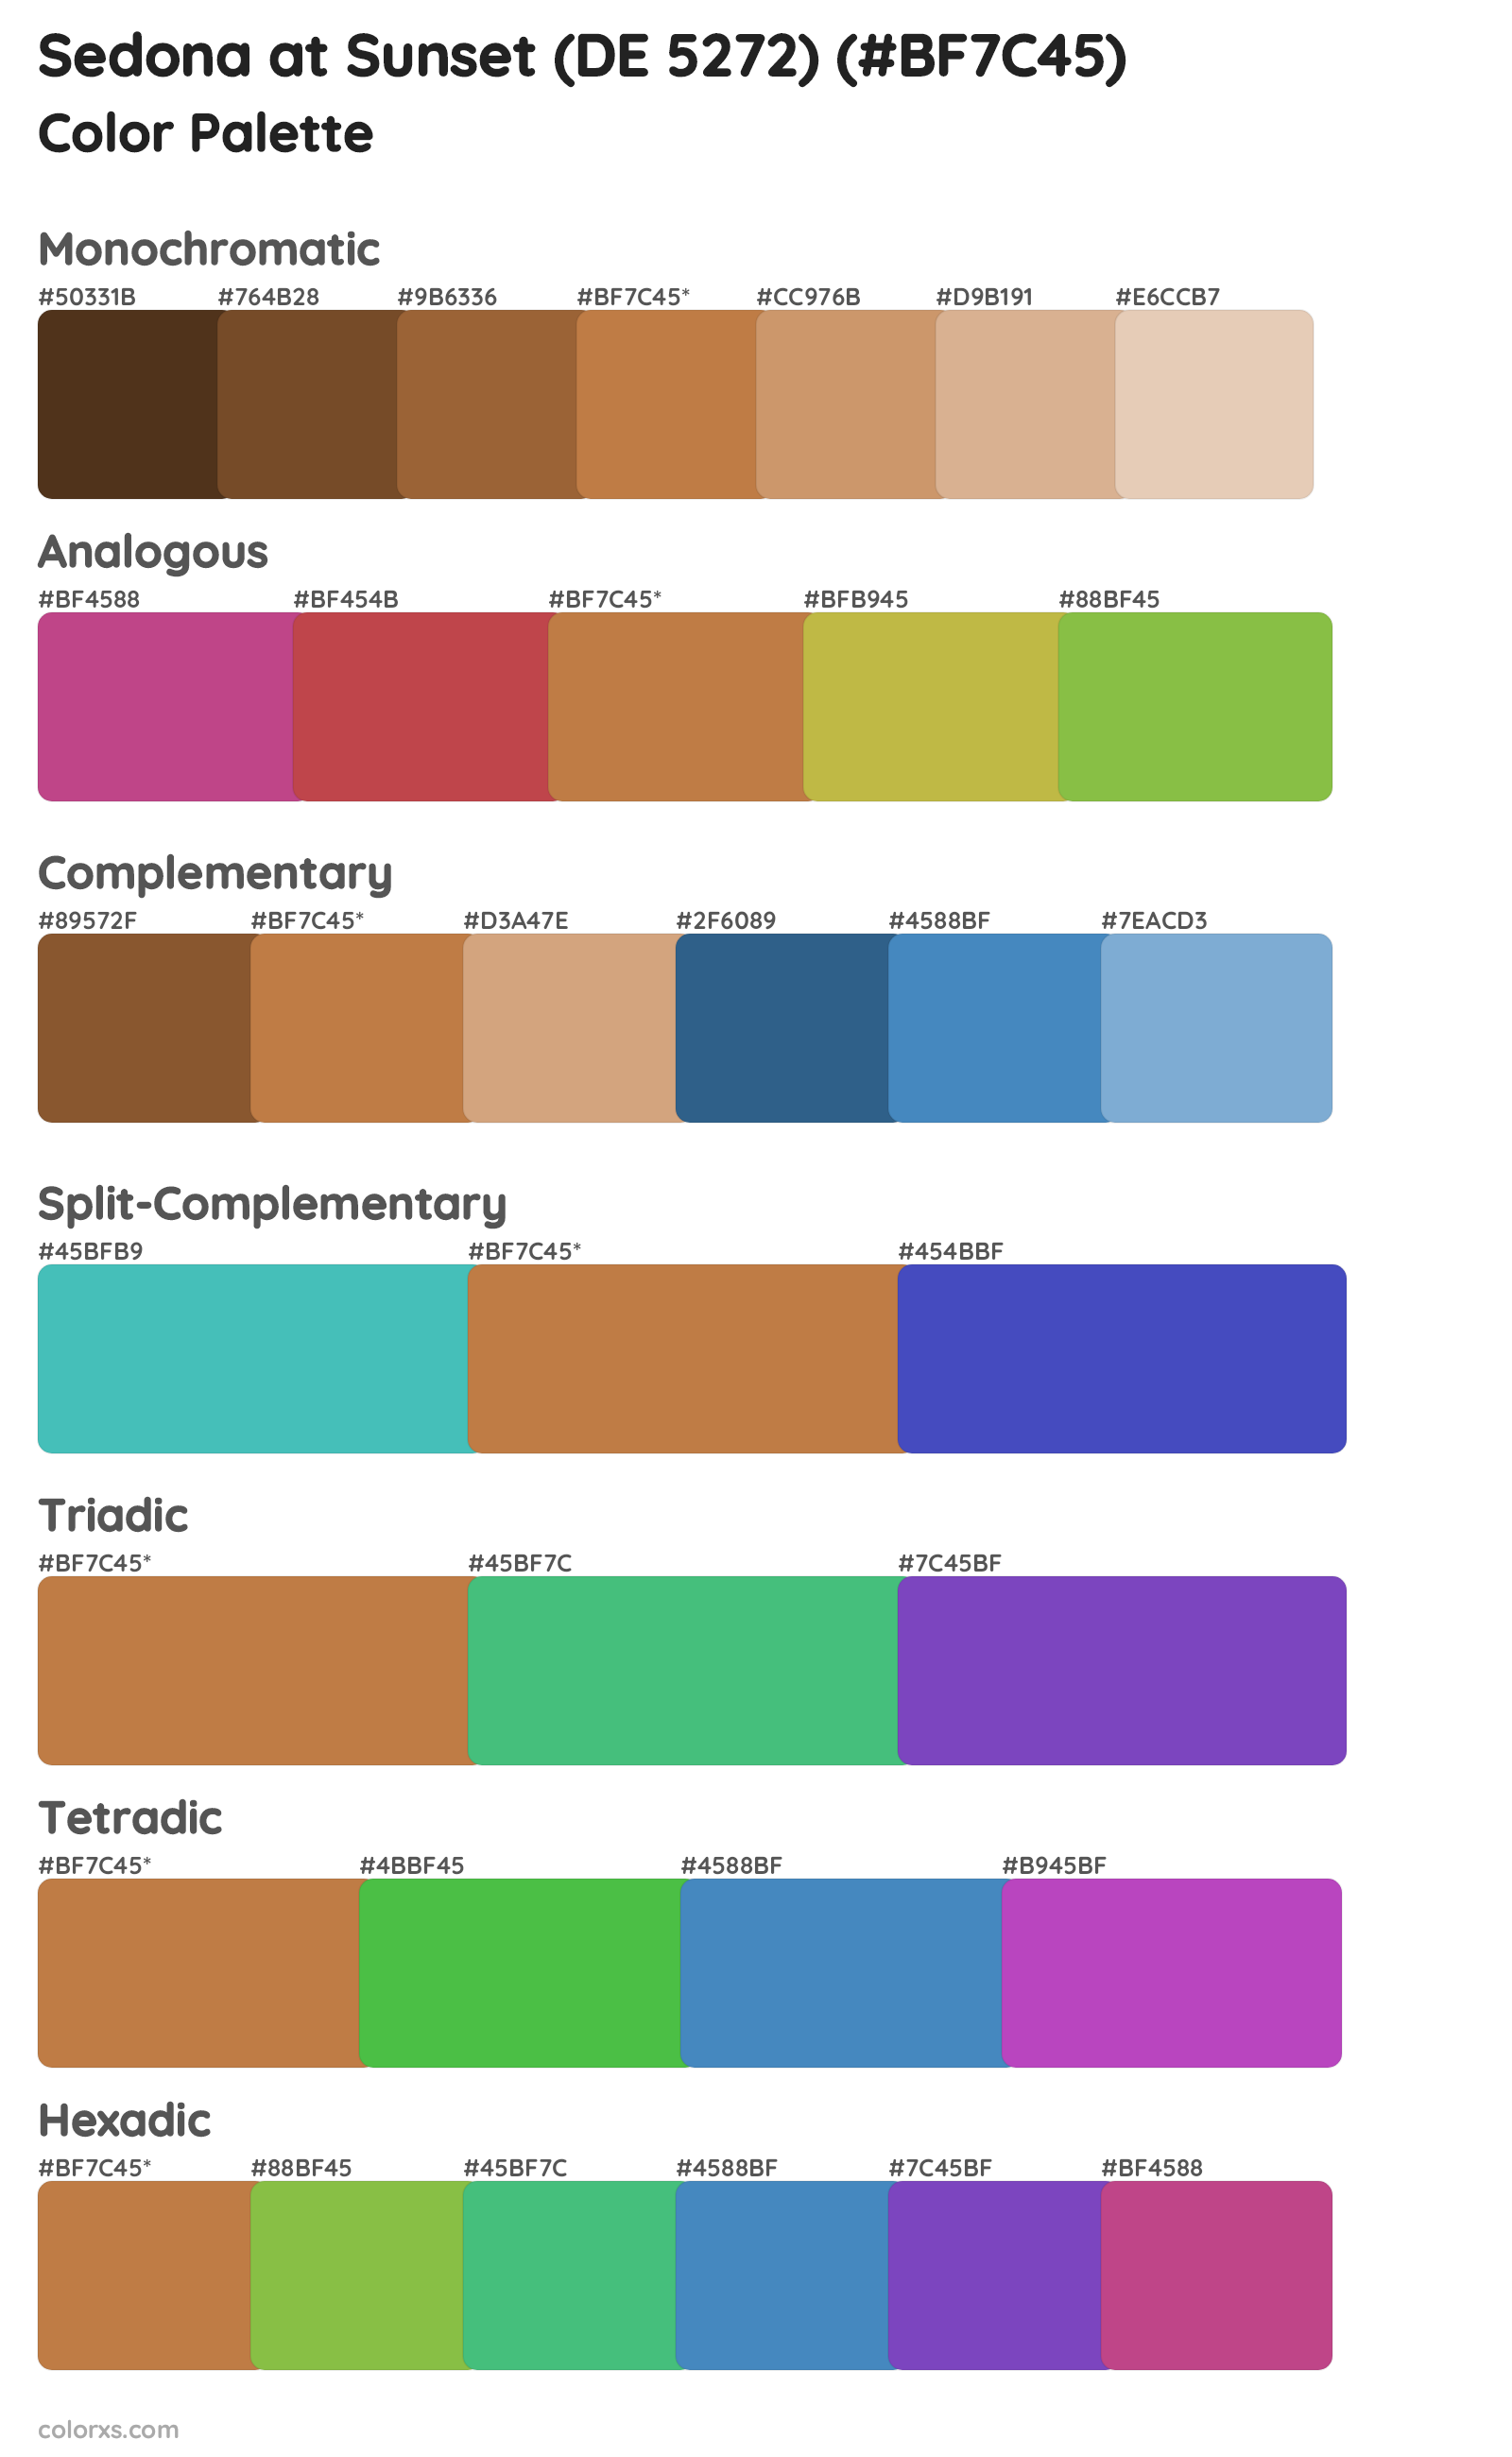 Sedona at Sunset (DE 5272) Color Scheme Palettes